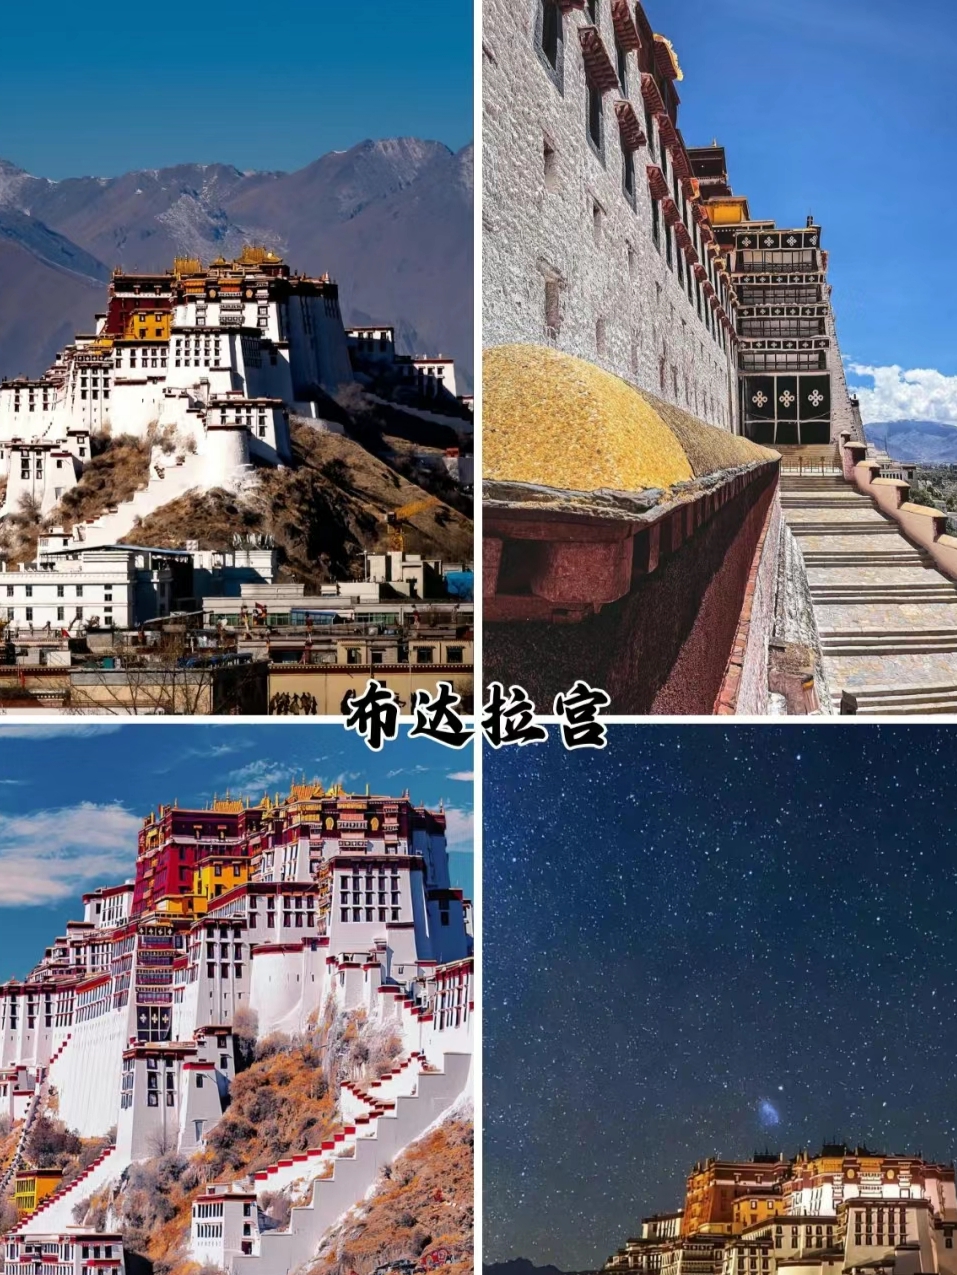 拉萨是西藏自治区的首府，也是西藏最重要的政治、经济和文化中心。以下是一些拉萨旅游攻略的建议： 参观布